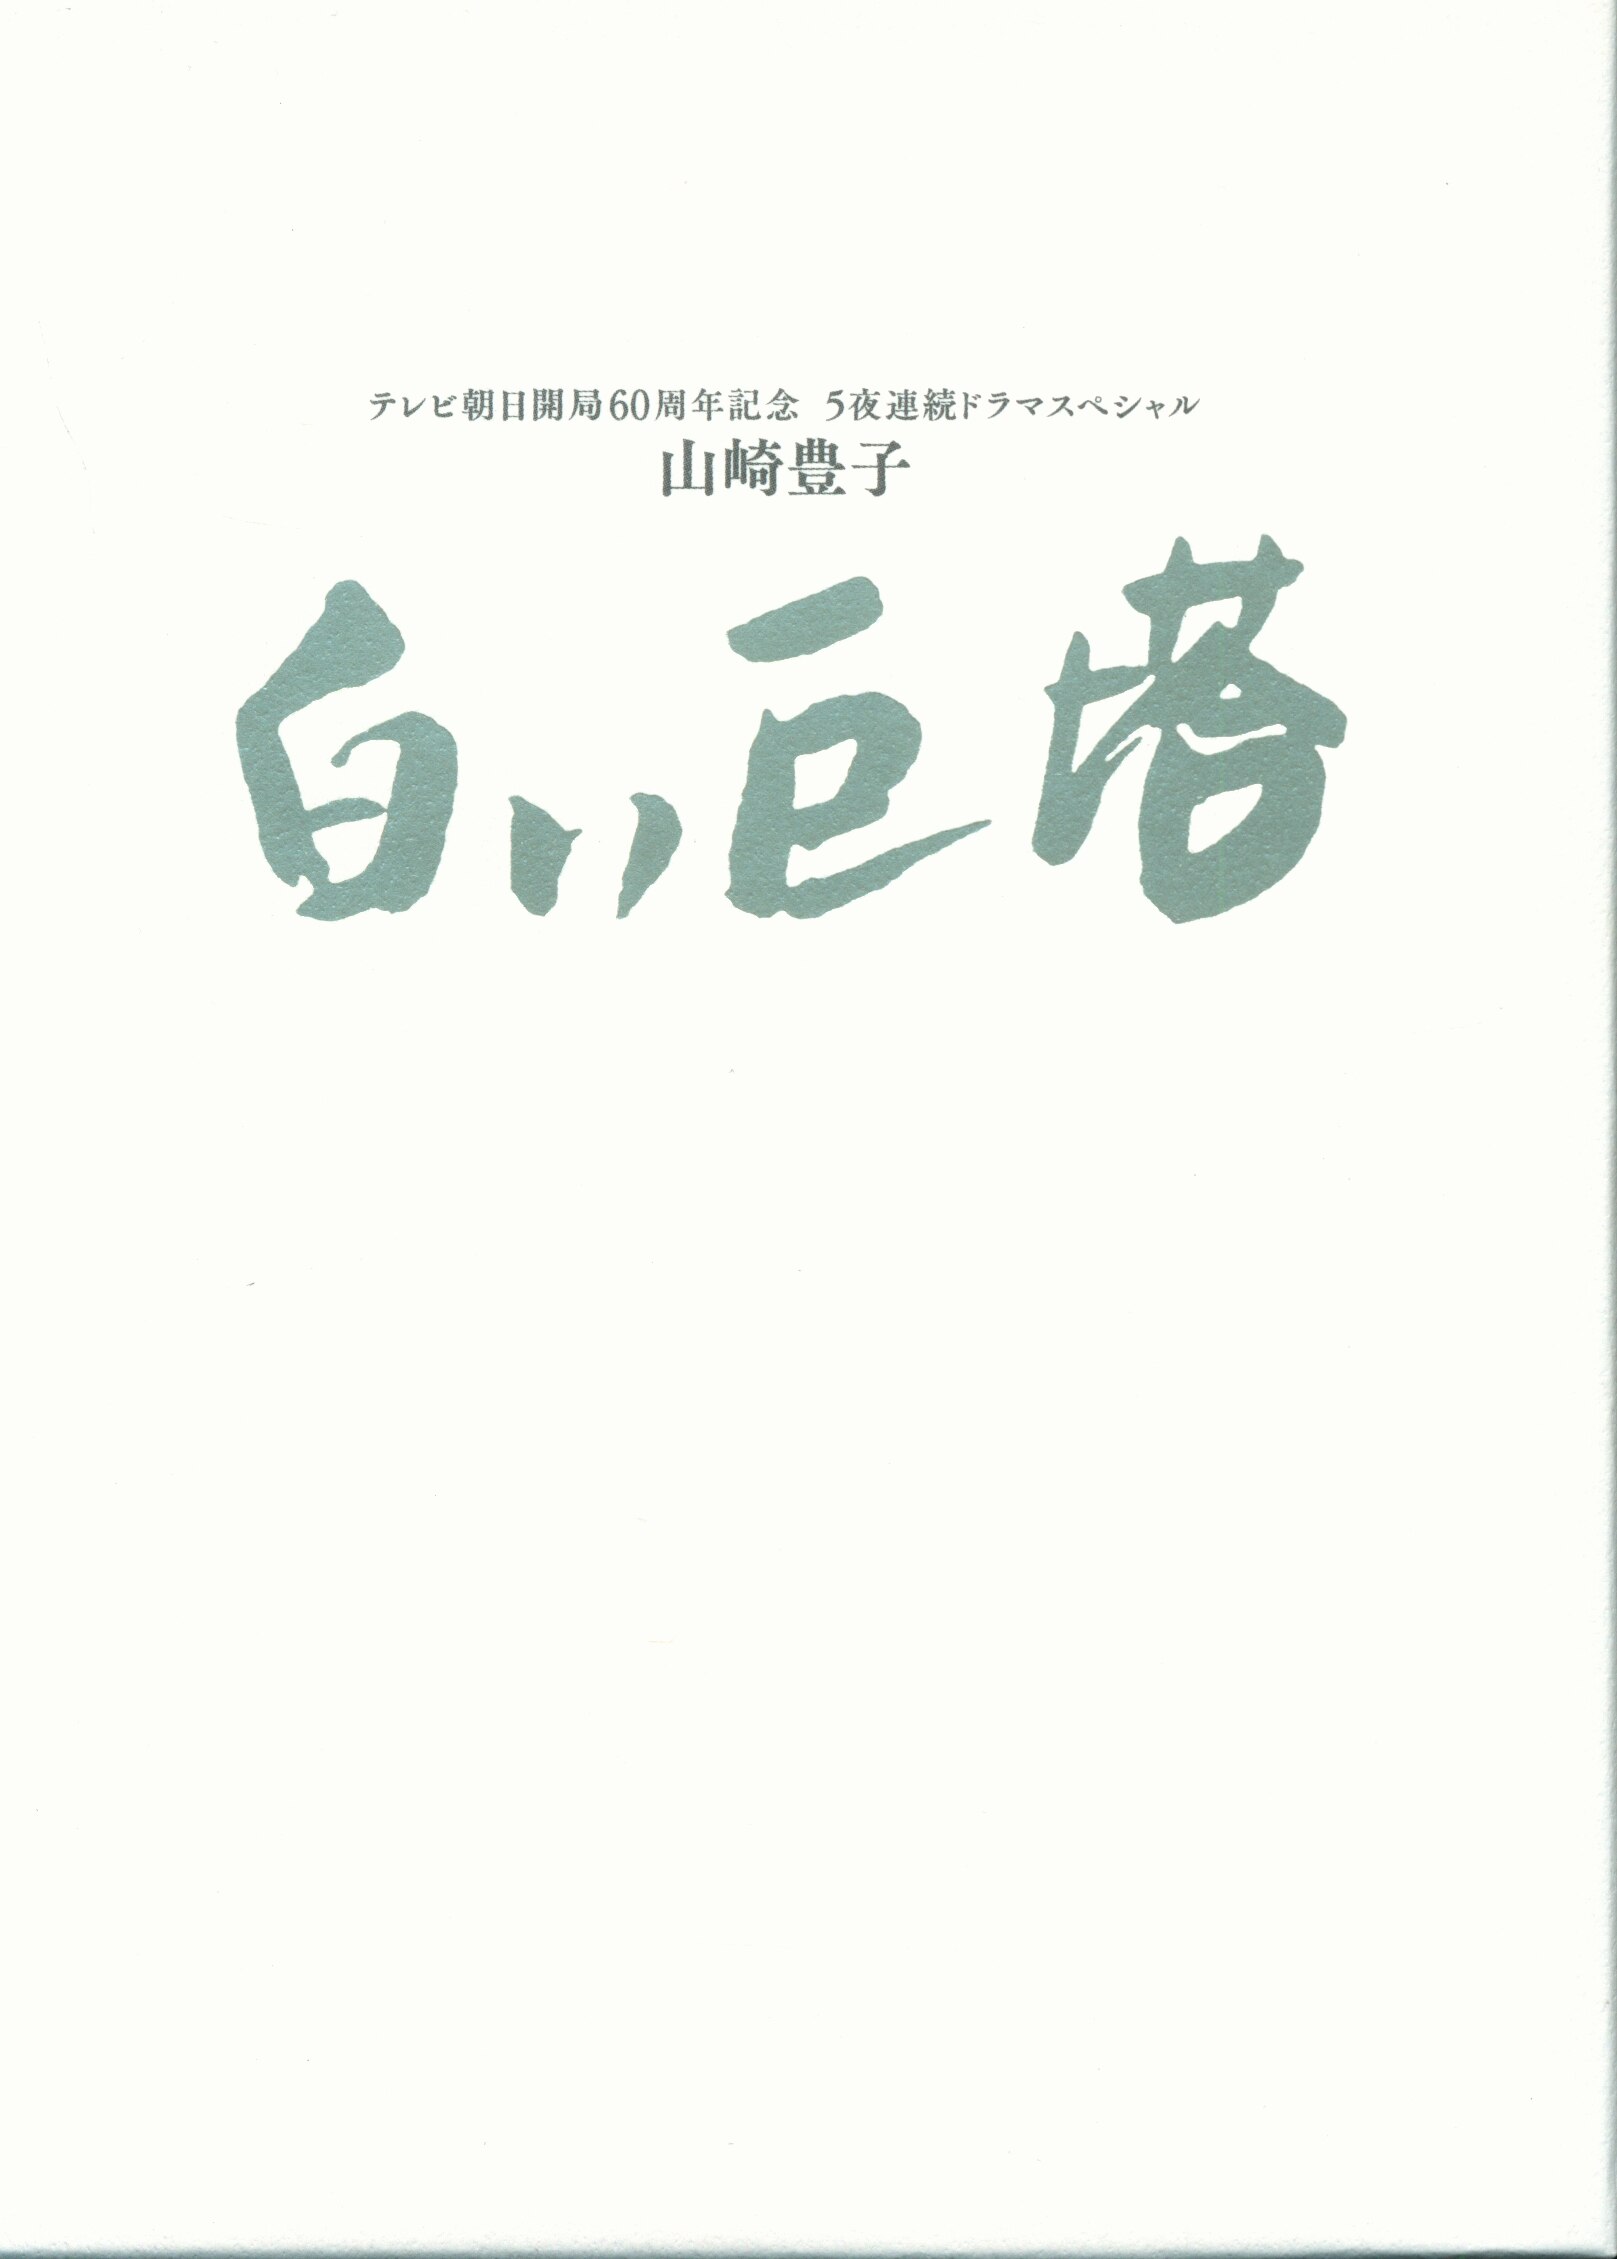 ドラマBlu-ray 白い巨塔 Blu-ray BOX/テレビ朝日開局60周年記念 5夜